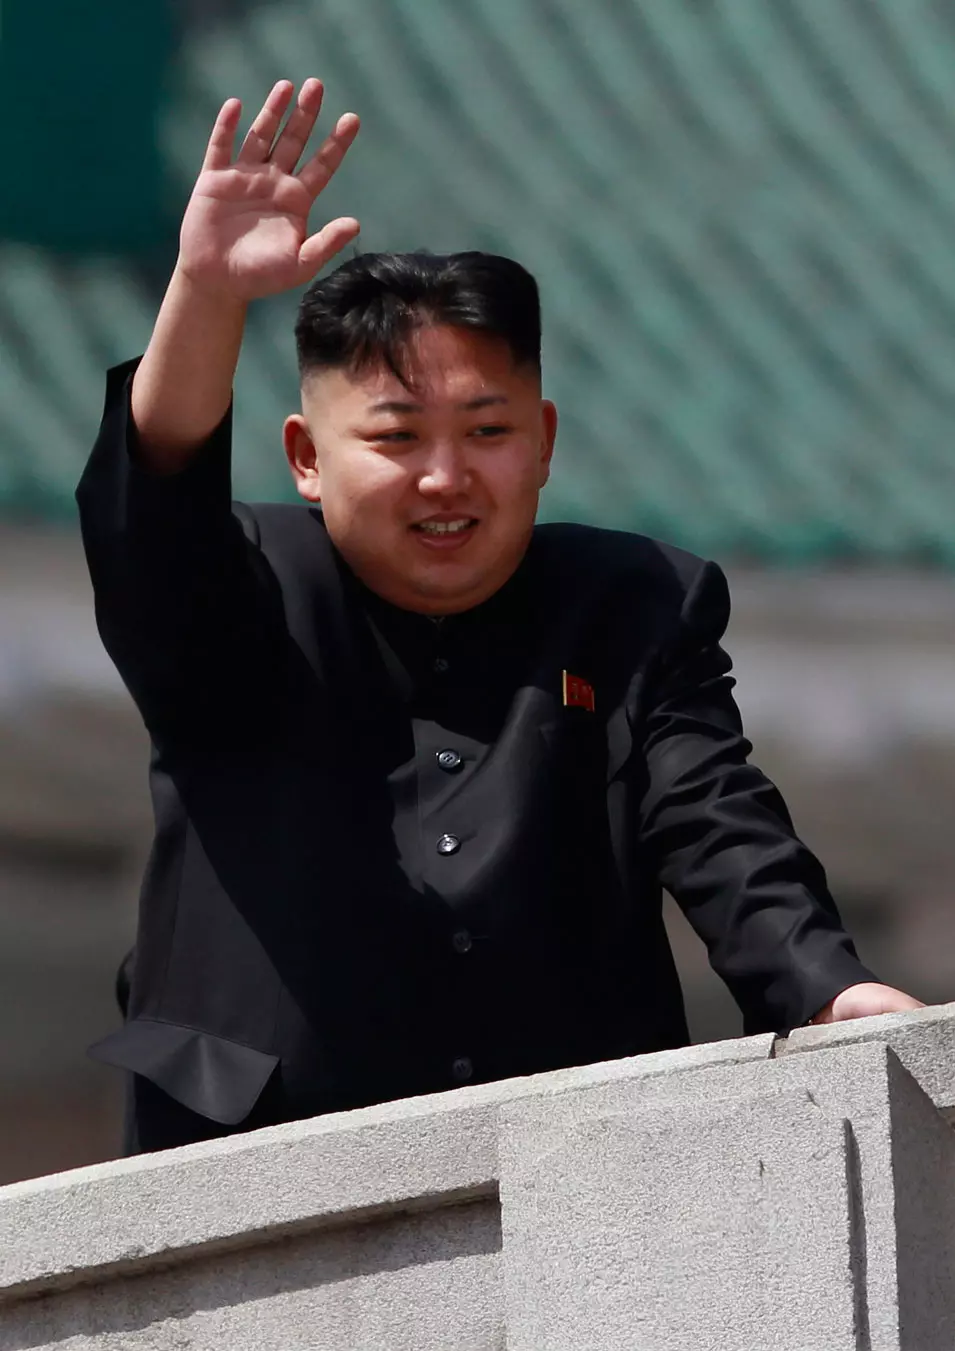 שליט צפון קוריאה, קים ג'ונג און